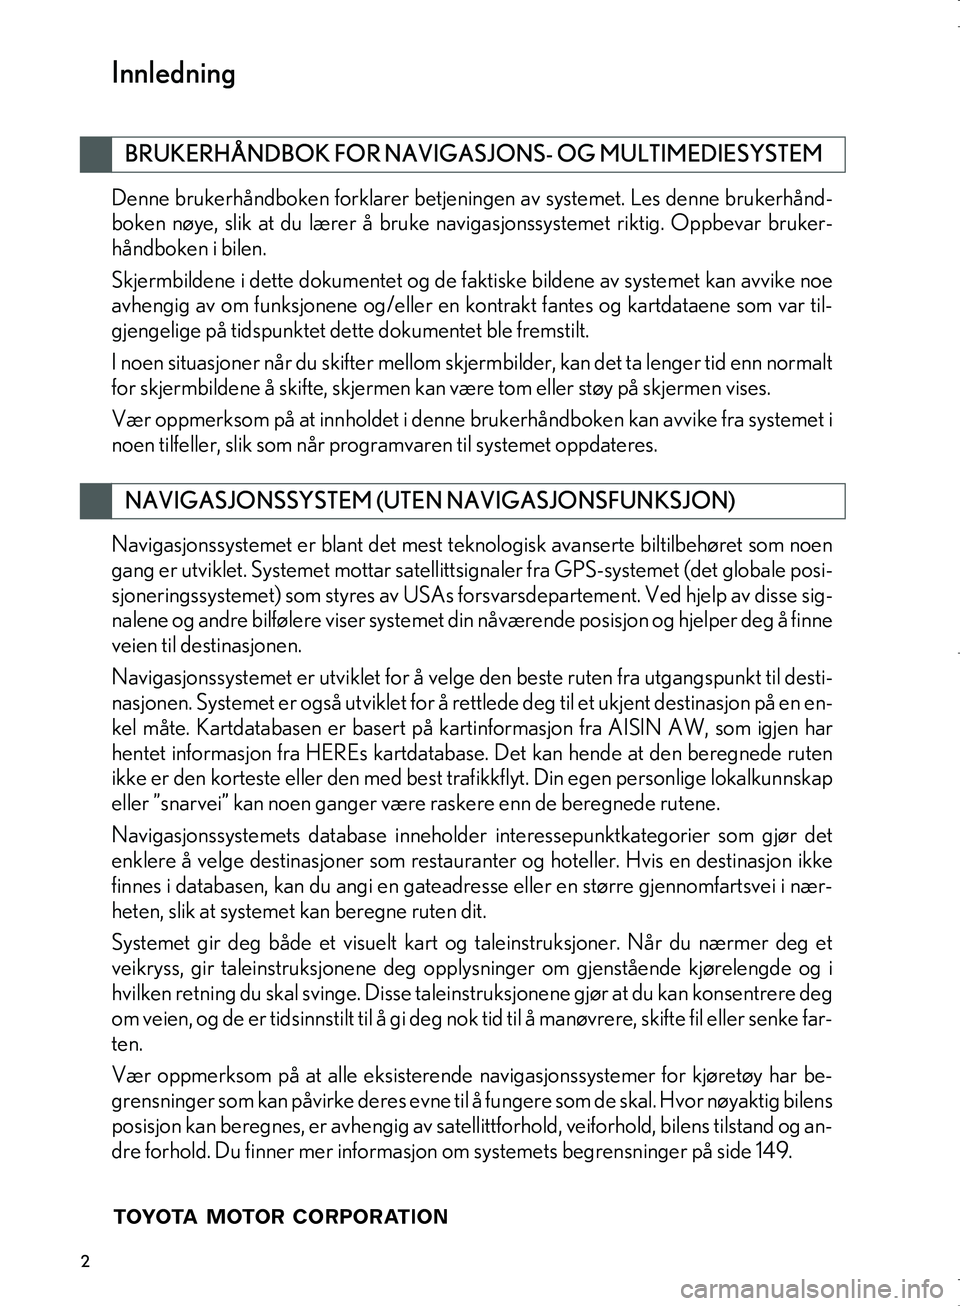 Lexus IS300h 2016  Navigasjon (in Norwegian) 2
OM53E02NO
Denne brukerhåndboken forklarer betjeningen av systemet. Les denne brukerhånd-
boken nøye, slik at du lærer å bruke navi gasjonssystemet riktig. Oppbevar bruker-
håndboken i bilen.
S